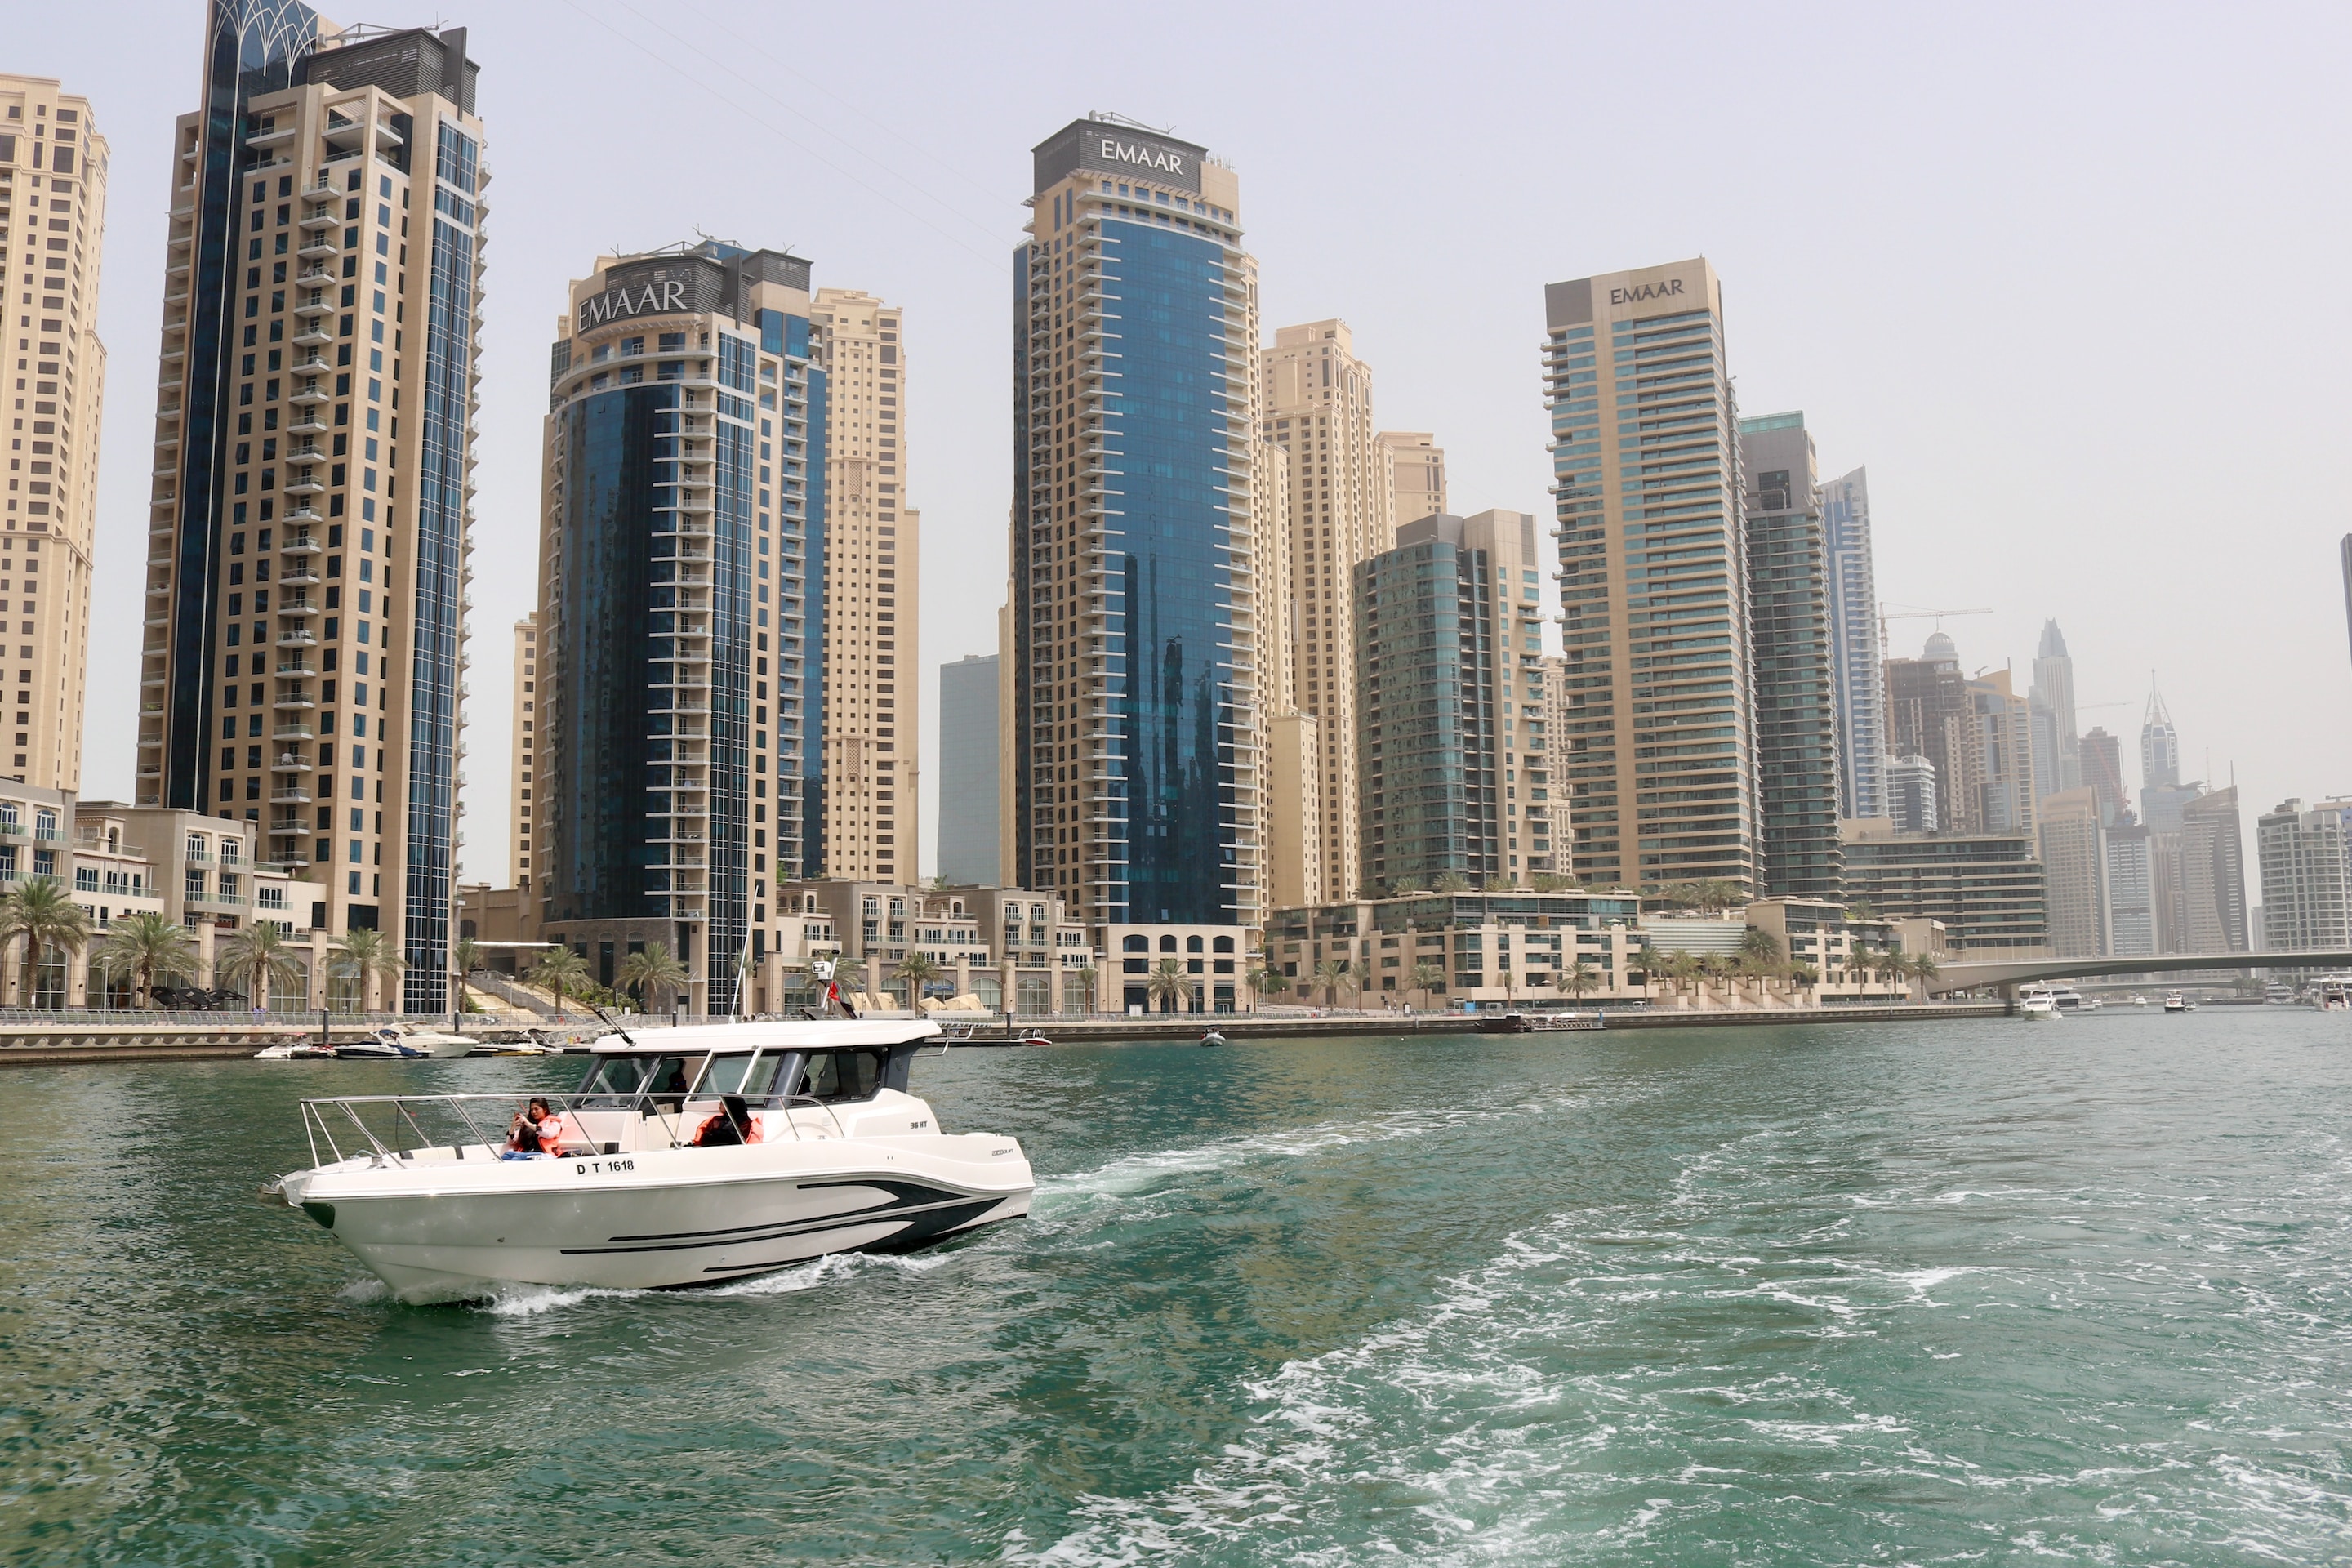 Who owns Damac in Dubai?